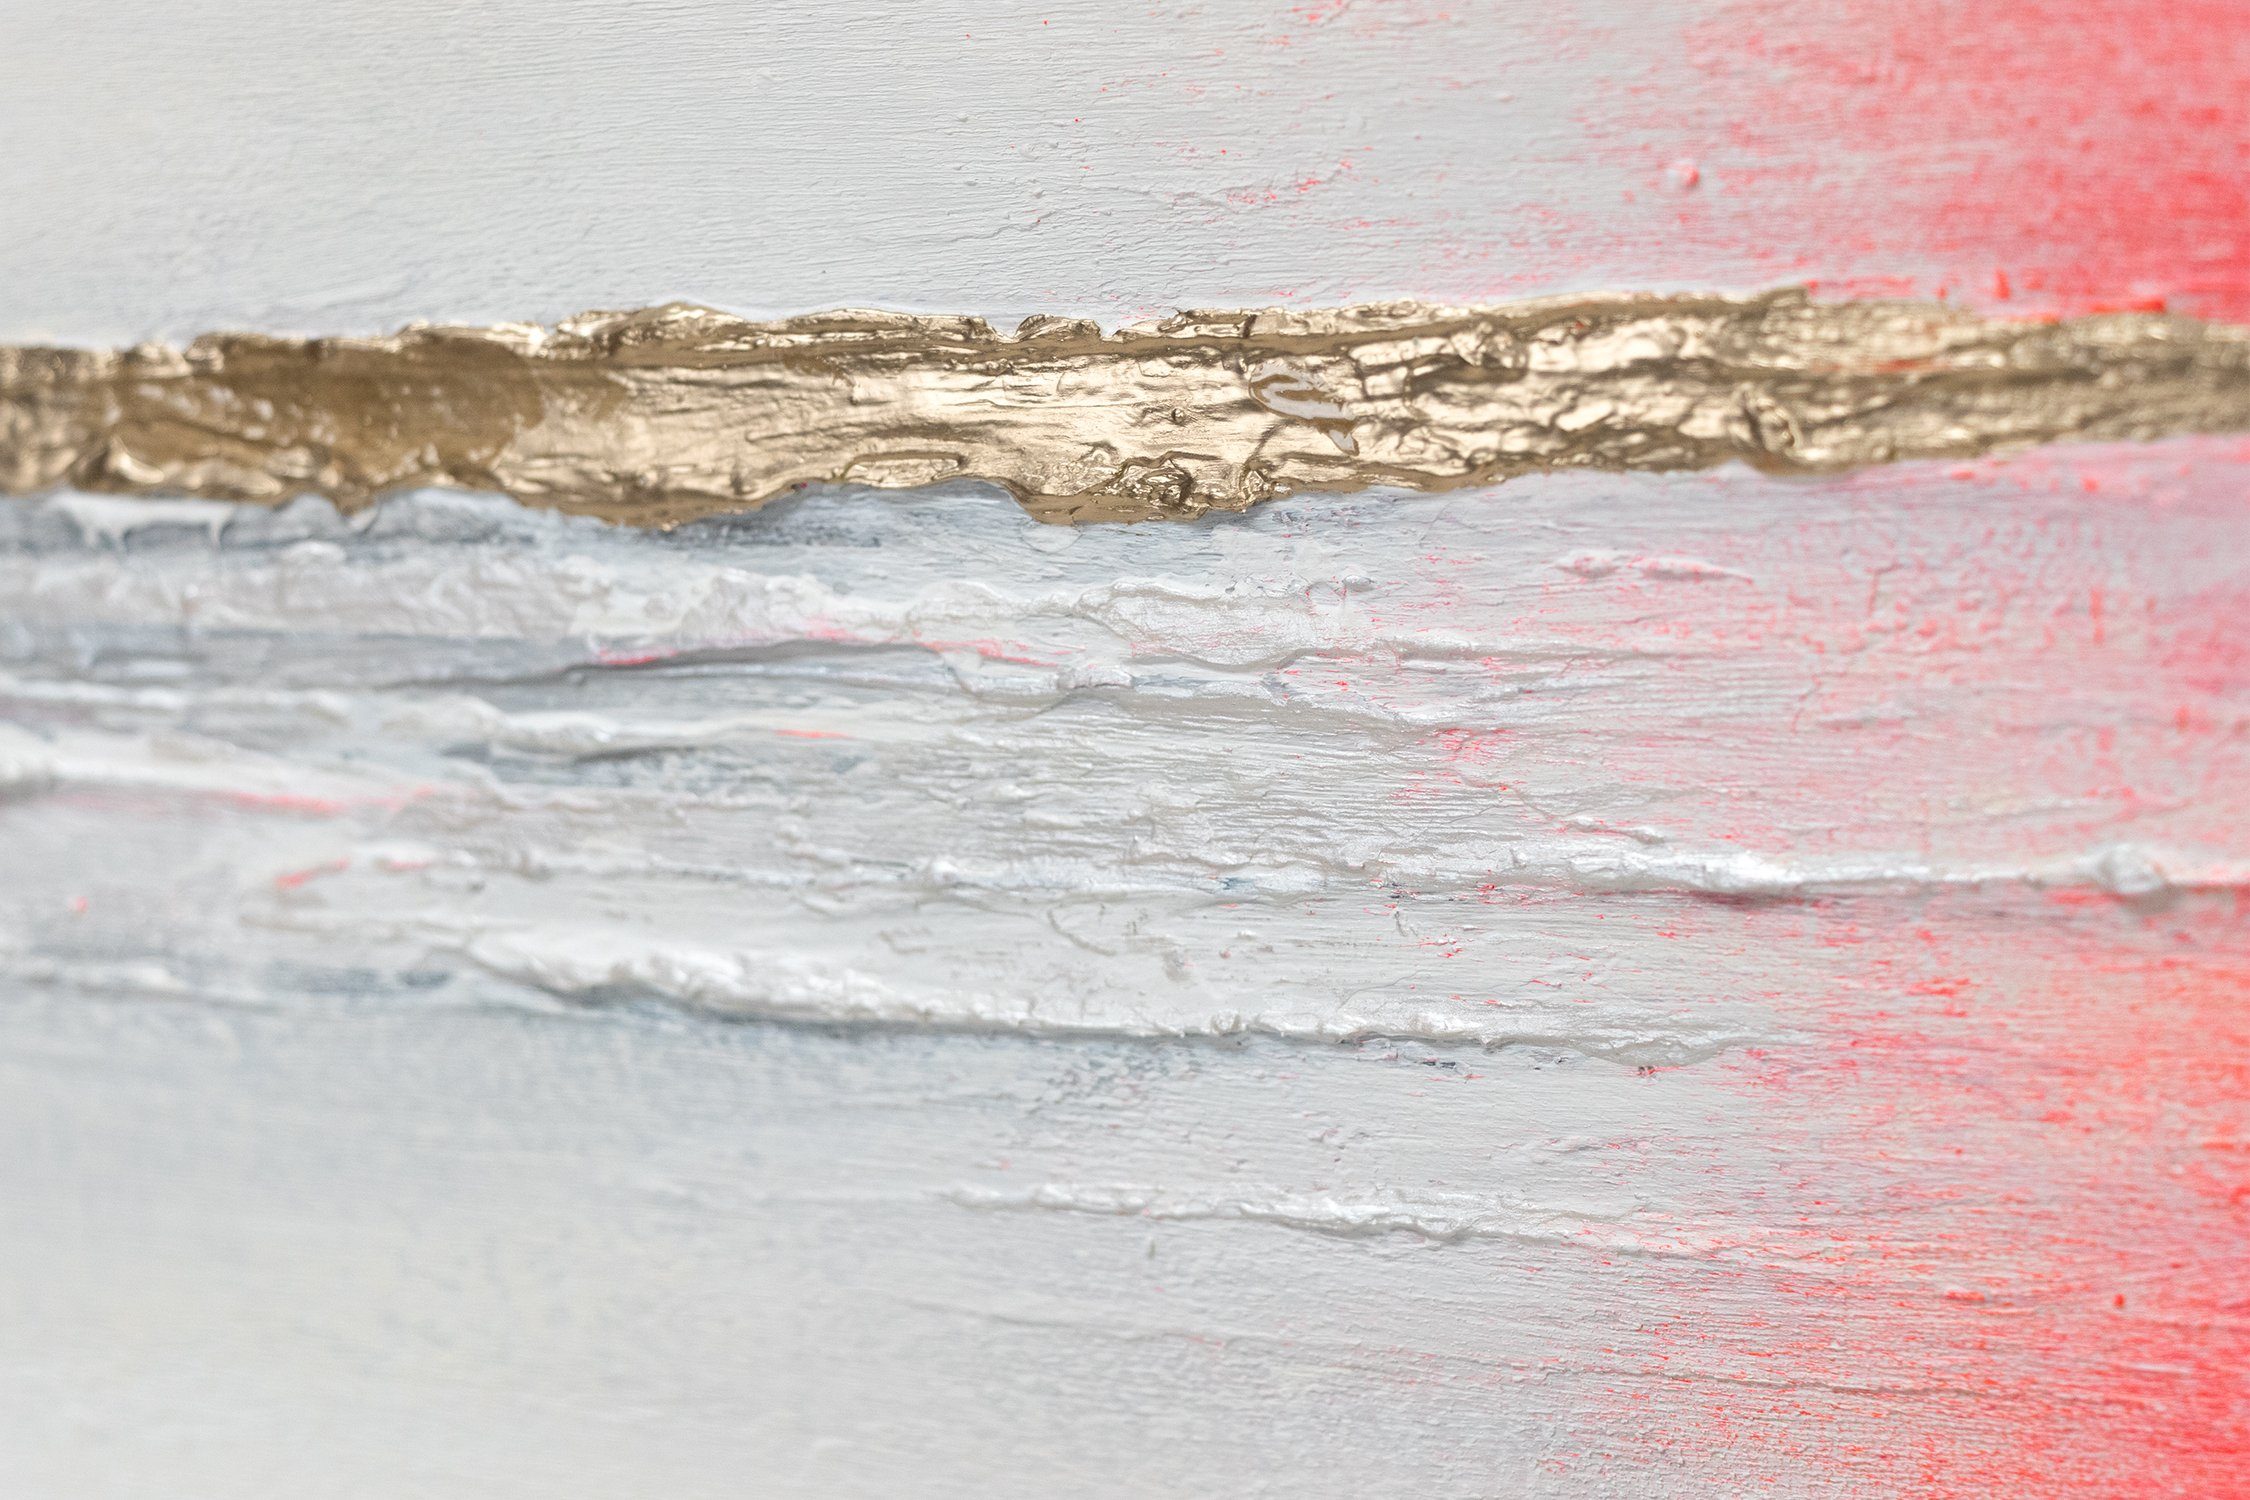 Landschaft Rot Handgemalt YS-Art Meer Bild in Leinwand Gold Traum, Abstraktion, Gemälde